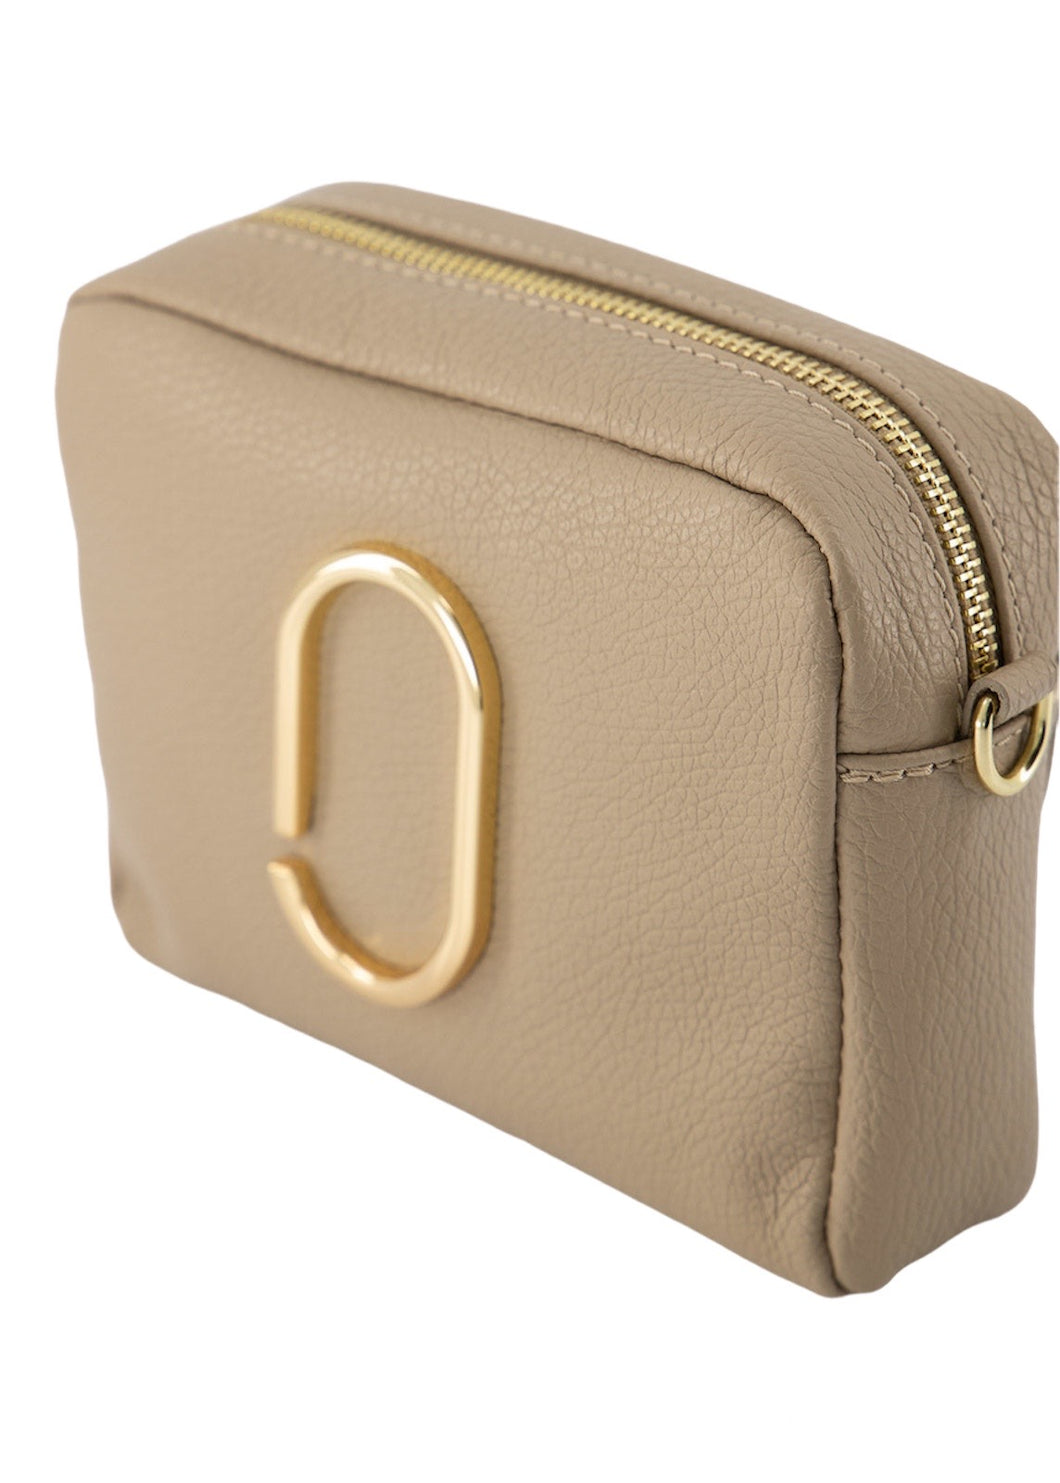 Lederen Tas Classic Grain Taupe, model 'crossbody bag', heeft een goudkleurige applicatie op de voorkant en heeft een verstelbare en afneembare schouderband. Deze damestas is verkrijgbaar in verschillende kleuren: Zwart, Taupe, Lichtblauw, Magenta, Groen.